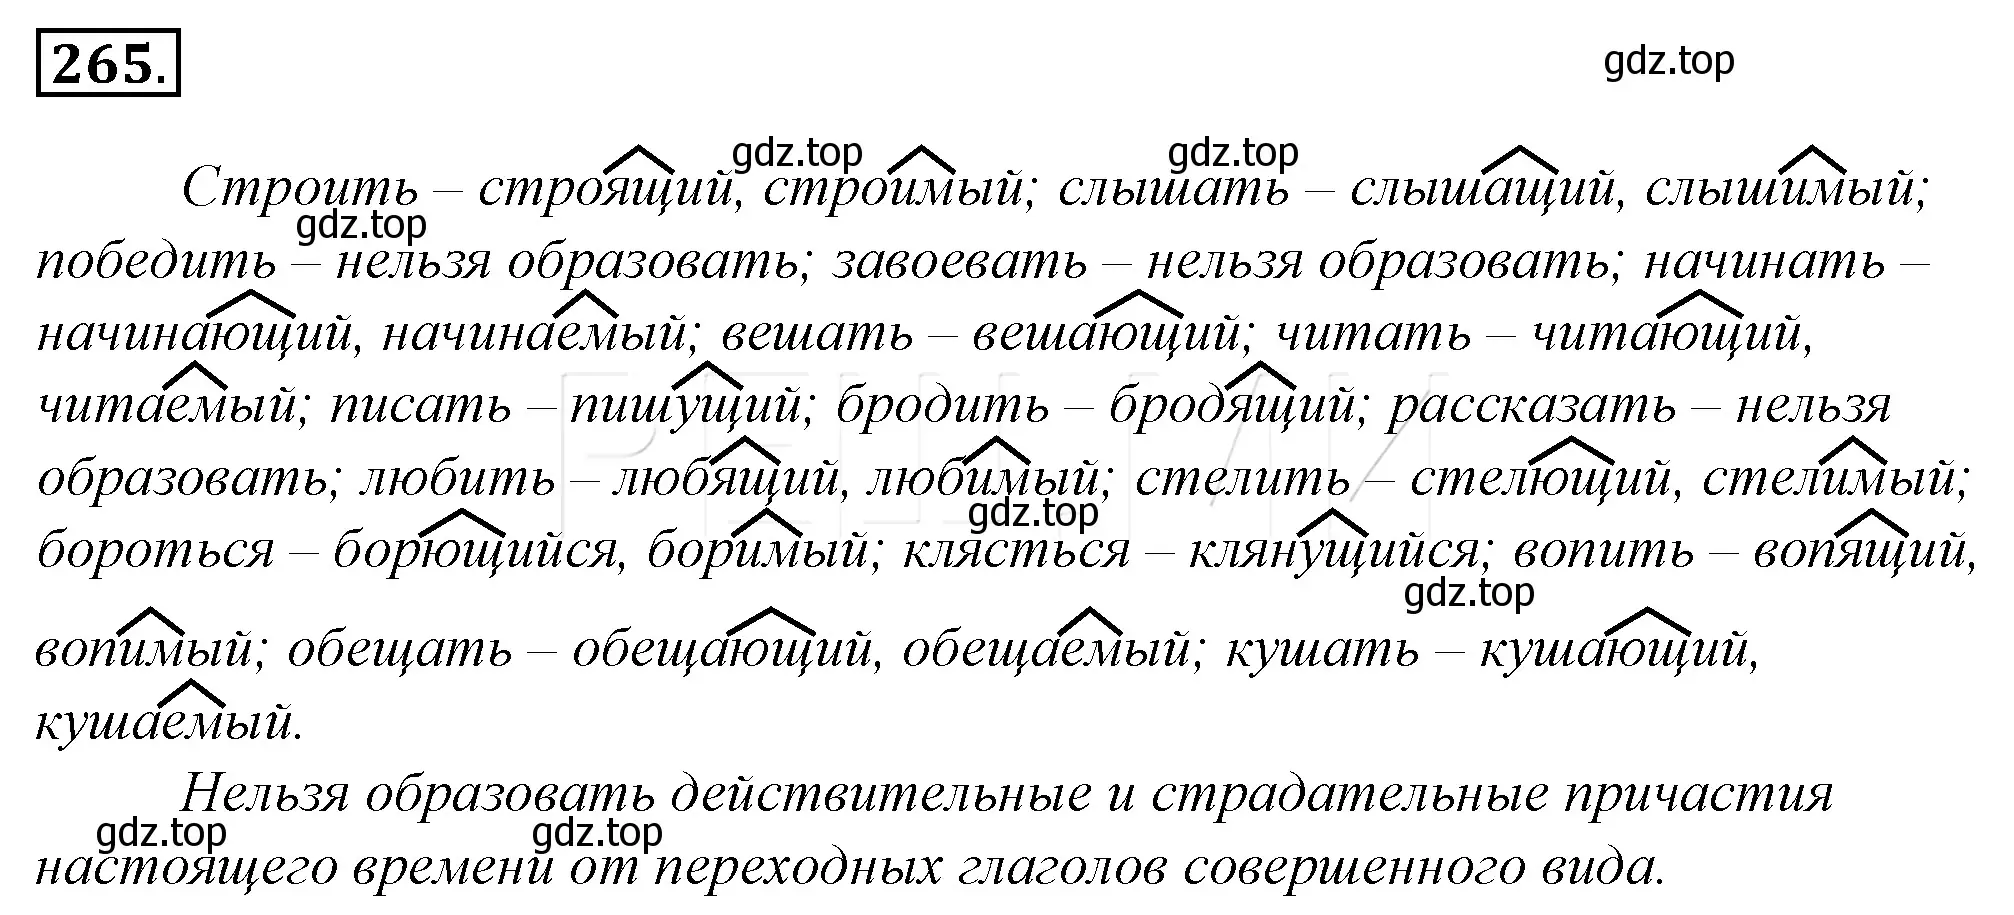 Решение 4. номер 289 (страница 268) гдз по русскому языку 10-11 класс Гольцова, Шамшин, учебник 1 часть